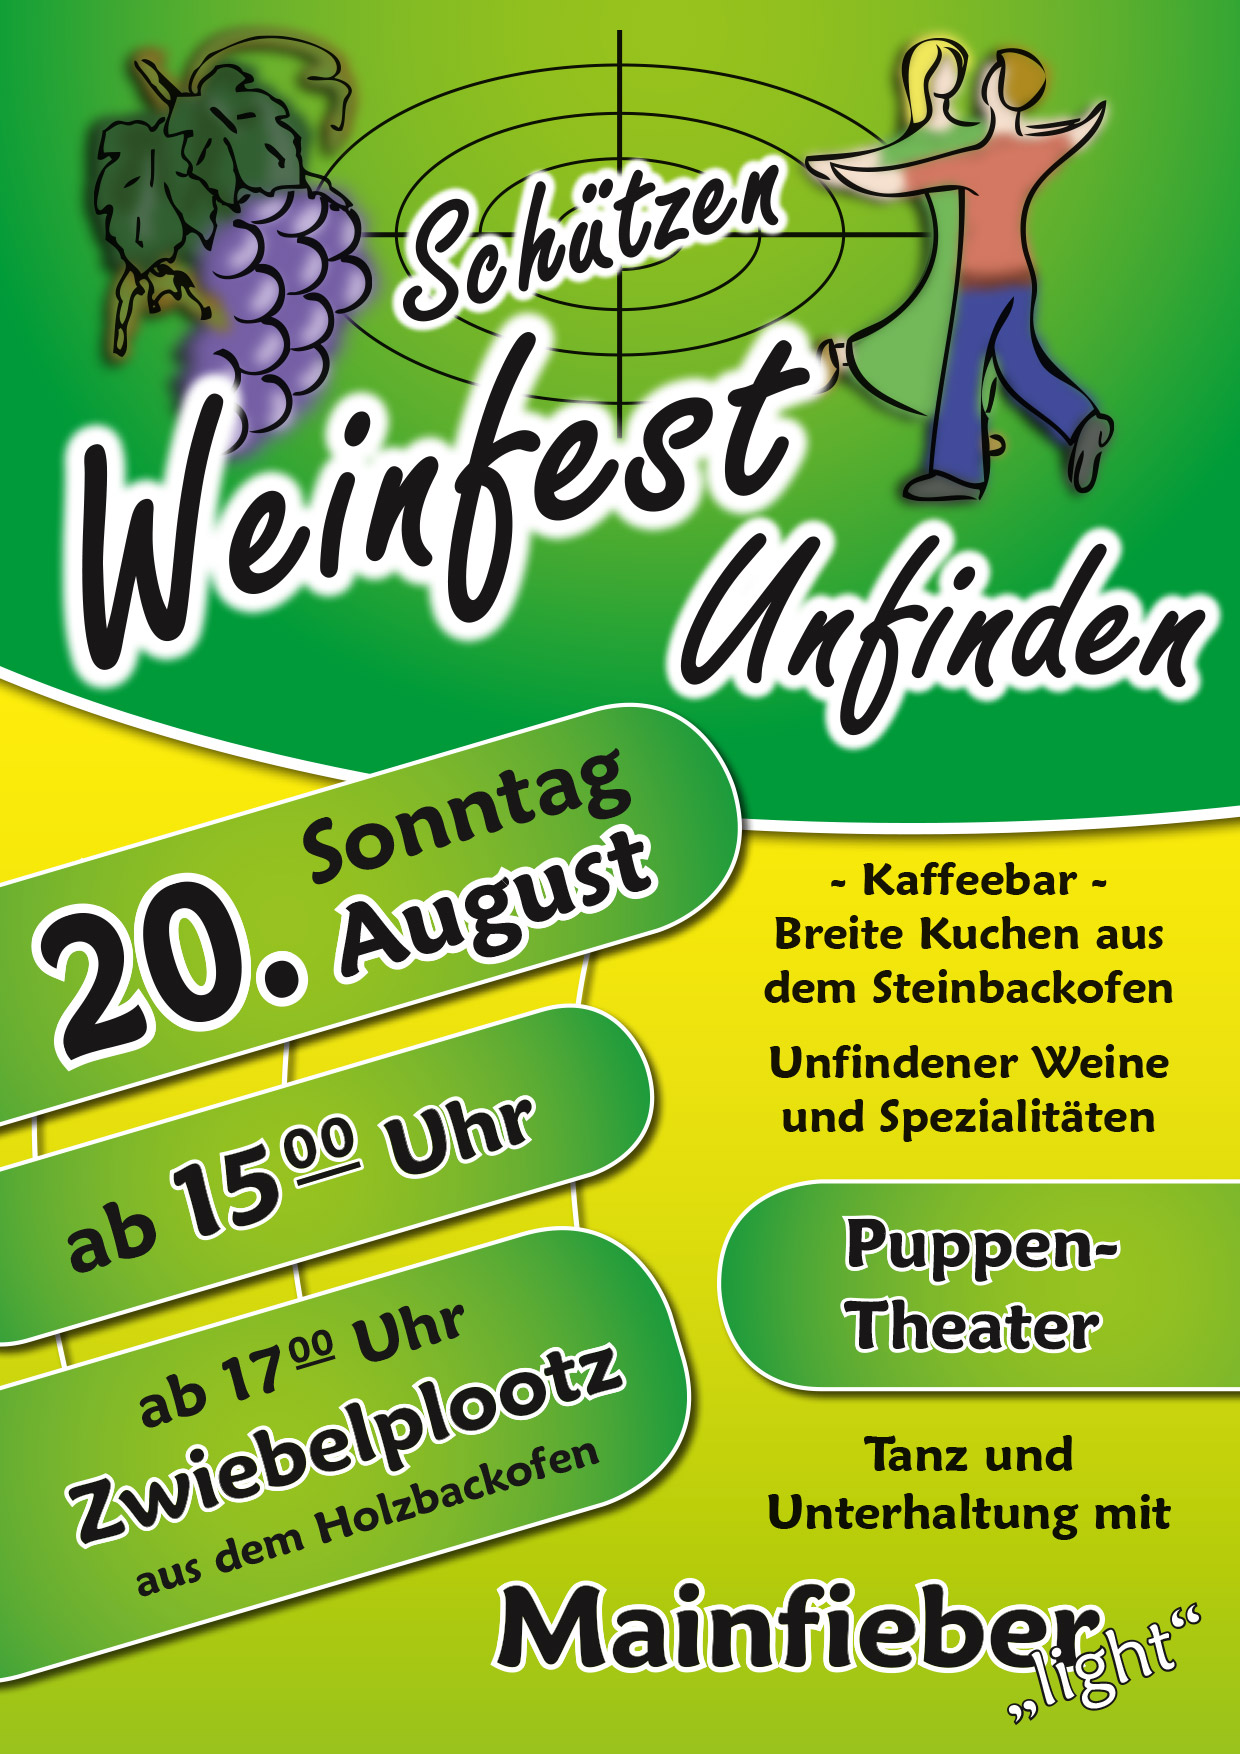 Schützen Weinfest am 20. August 2017 in Unfinden